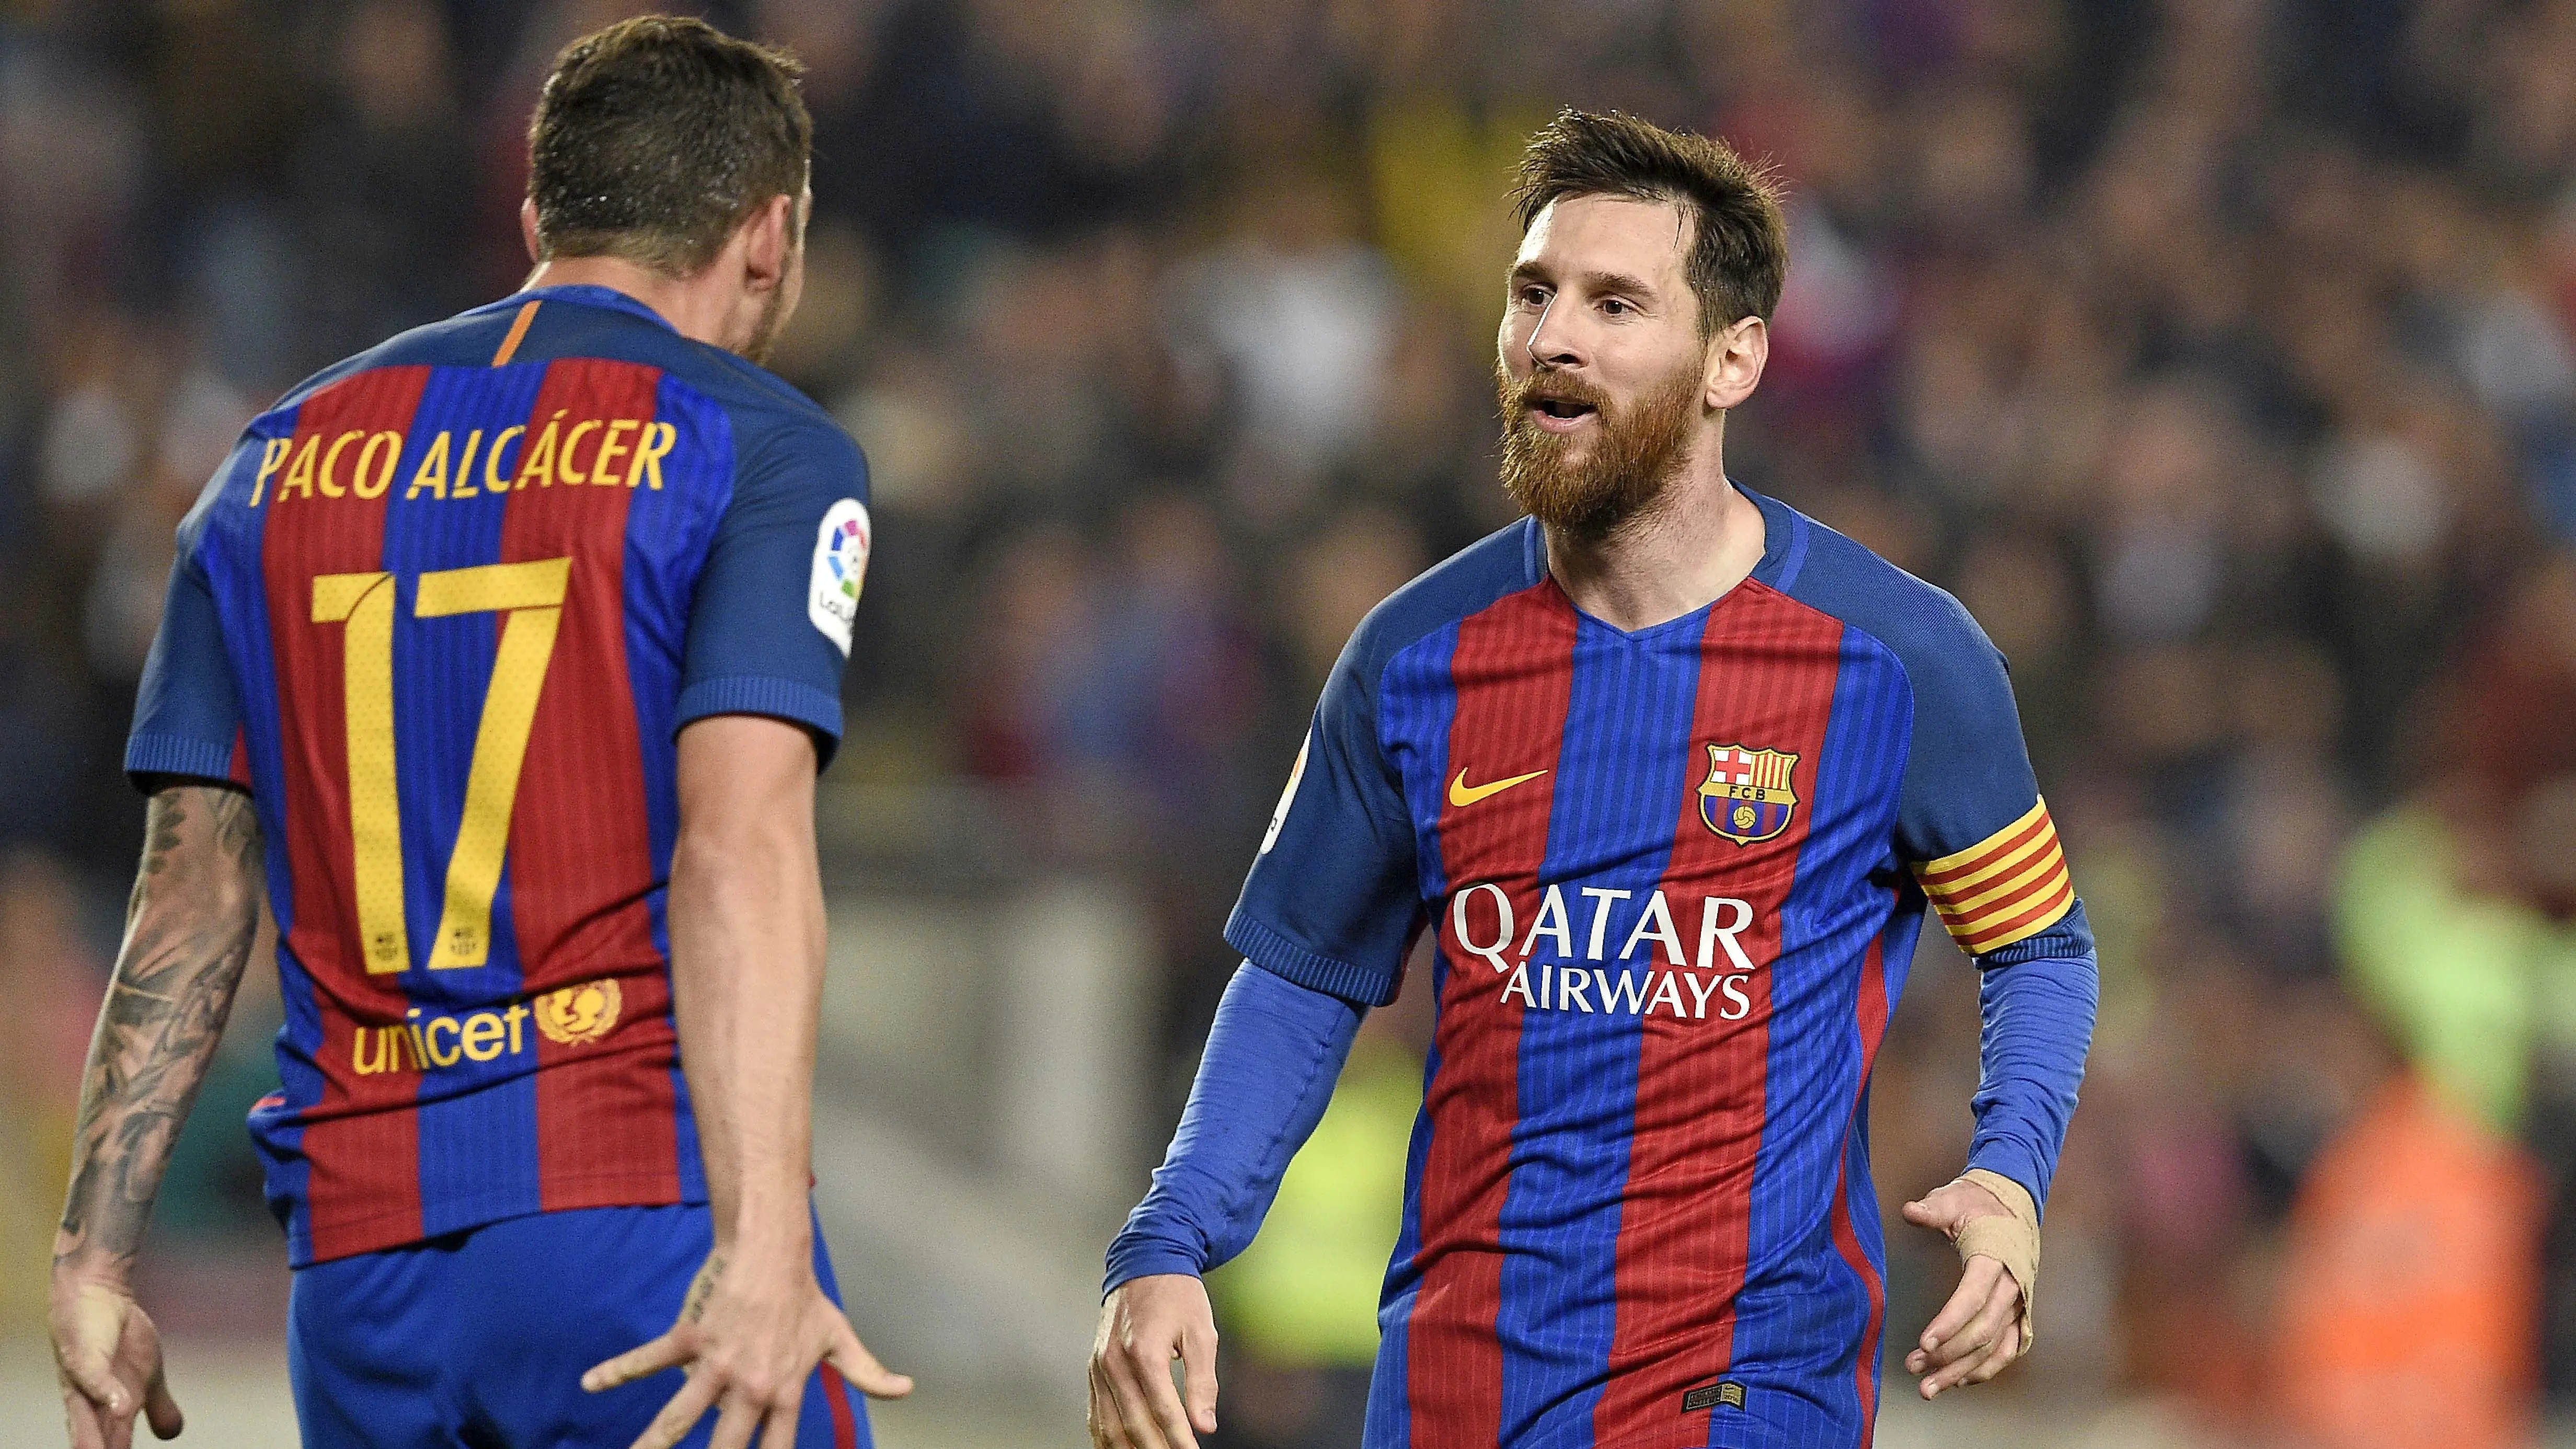 Penyerang Barcelona, Paco Alcacer (kiri) hanya mampu menjadi pelapis Lionel Messi, Neymar dan Suarez. Bersama Barcelona Paco telah mencetak delapan gol dari 28 penampilan. (AFP/Lluis Gene)